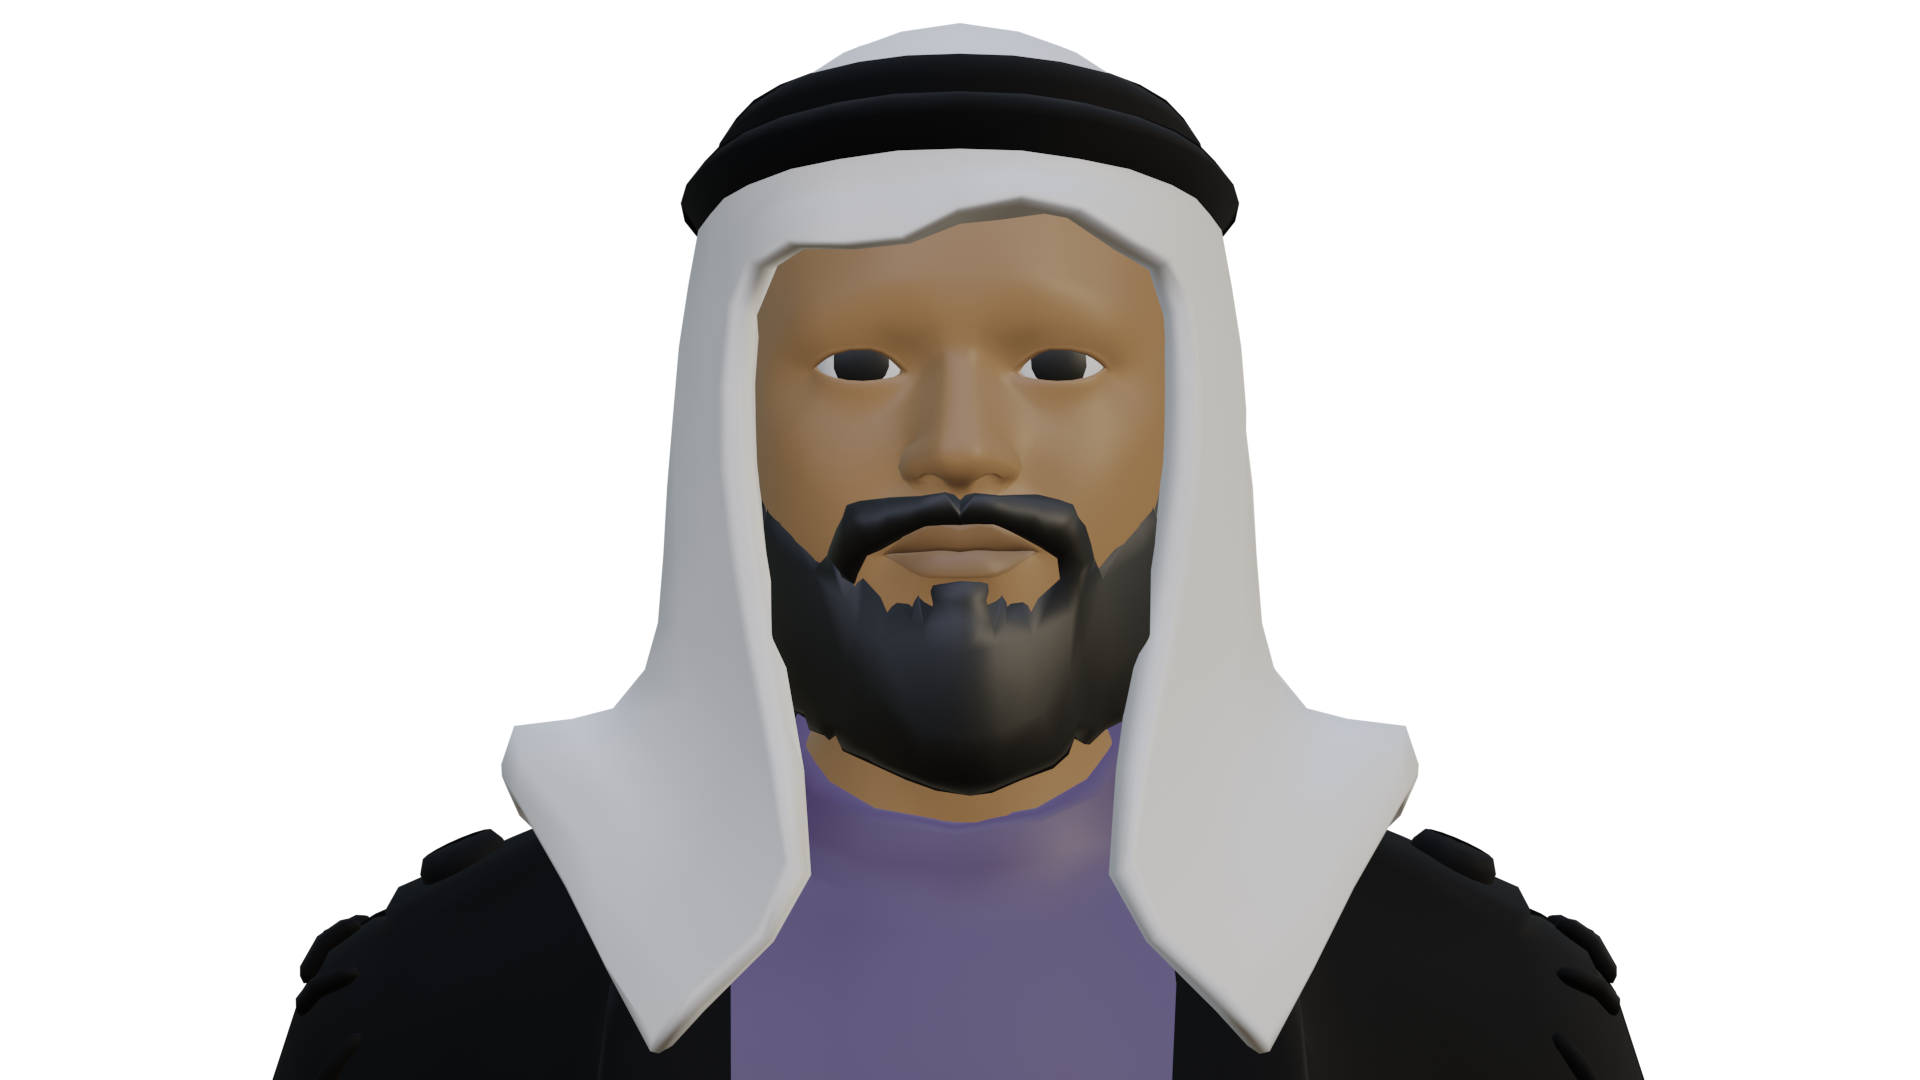 Arab Man preview image 1